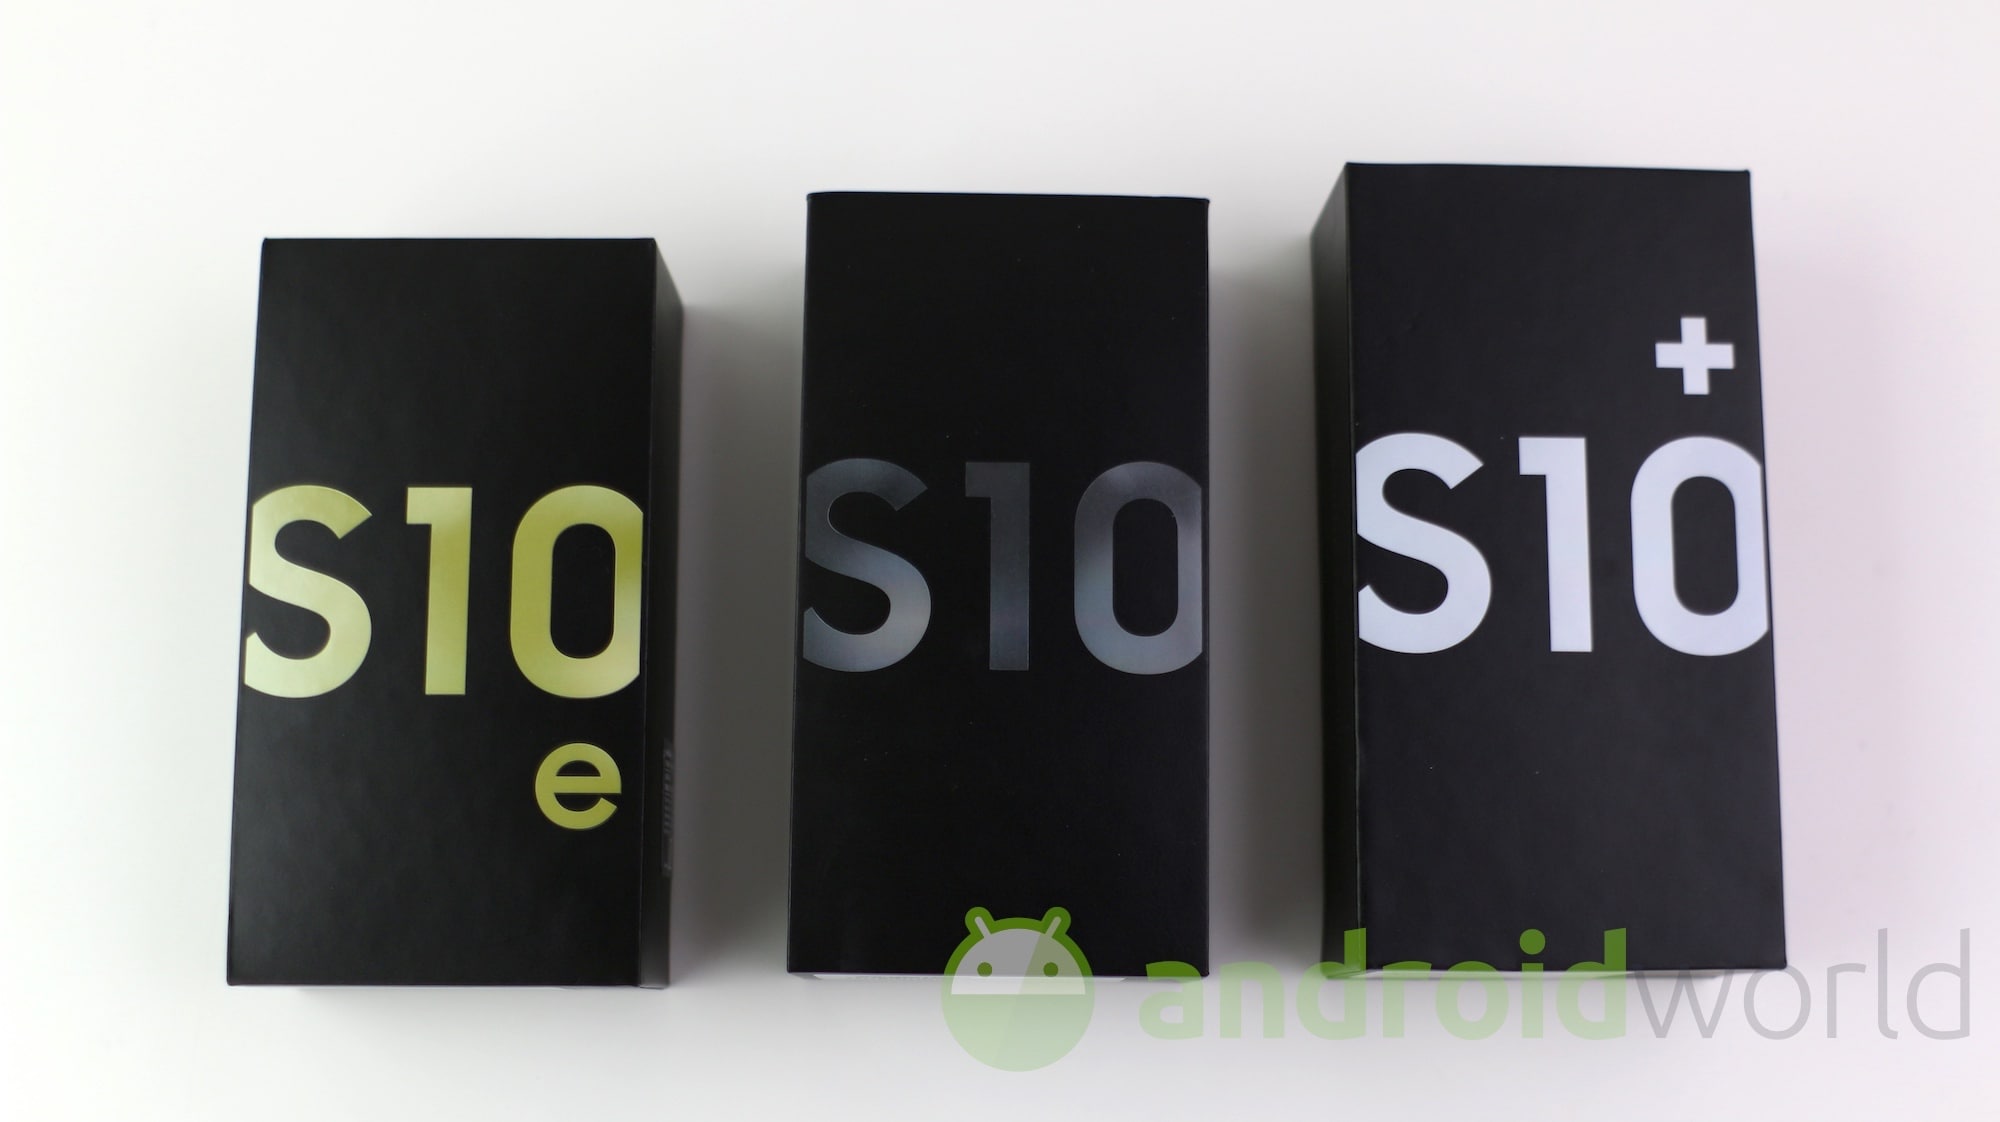 Ecco tutte le novità della beta di ONE UI 2.0 su Galaxy S10 con Android 10 (foto)